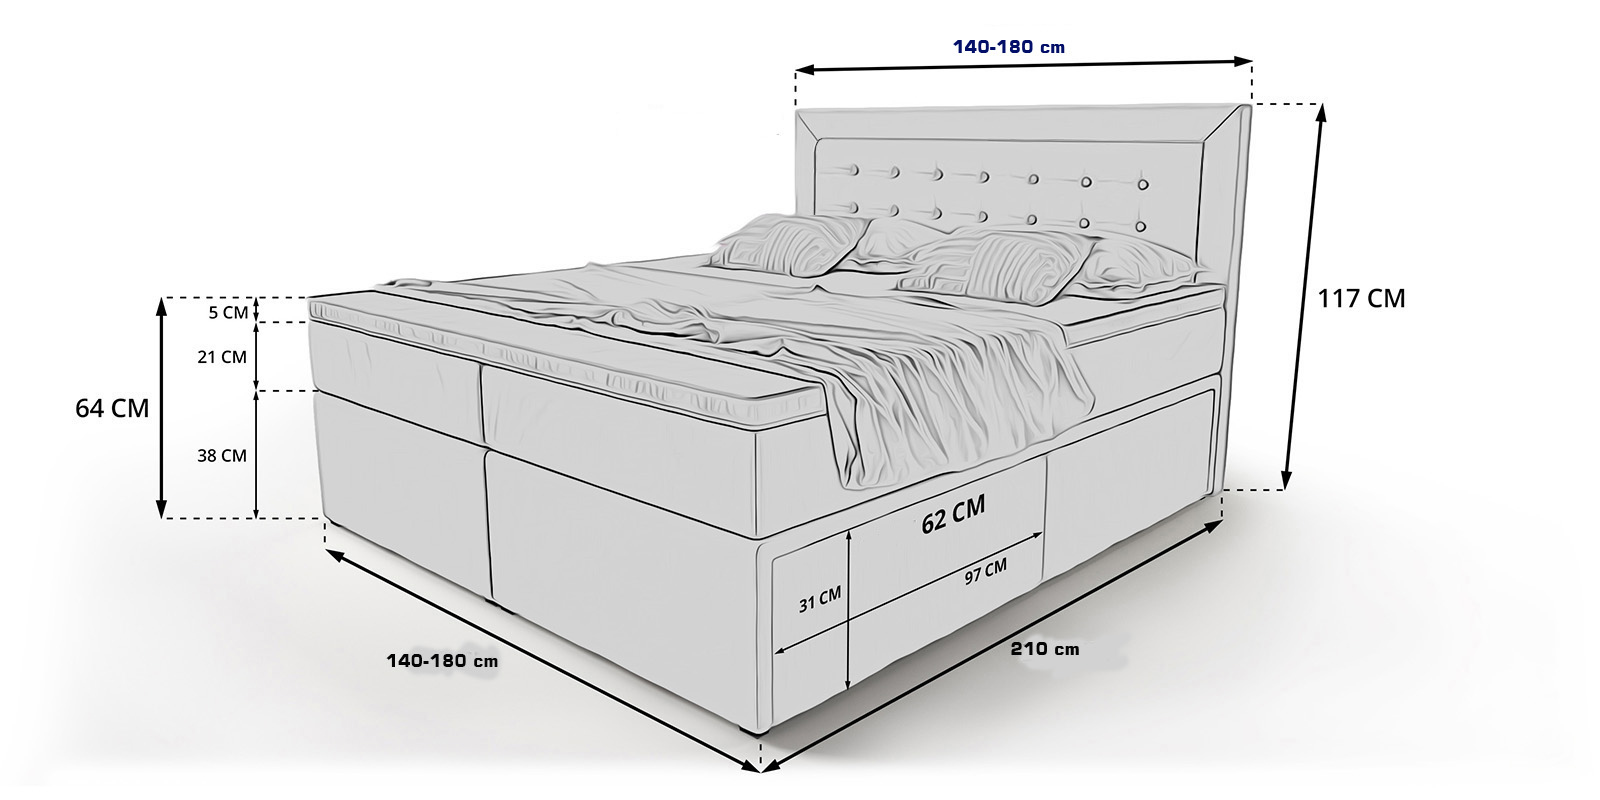 Высота кровати с матрасом от пола стандарт двуспальная